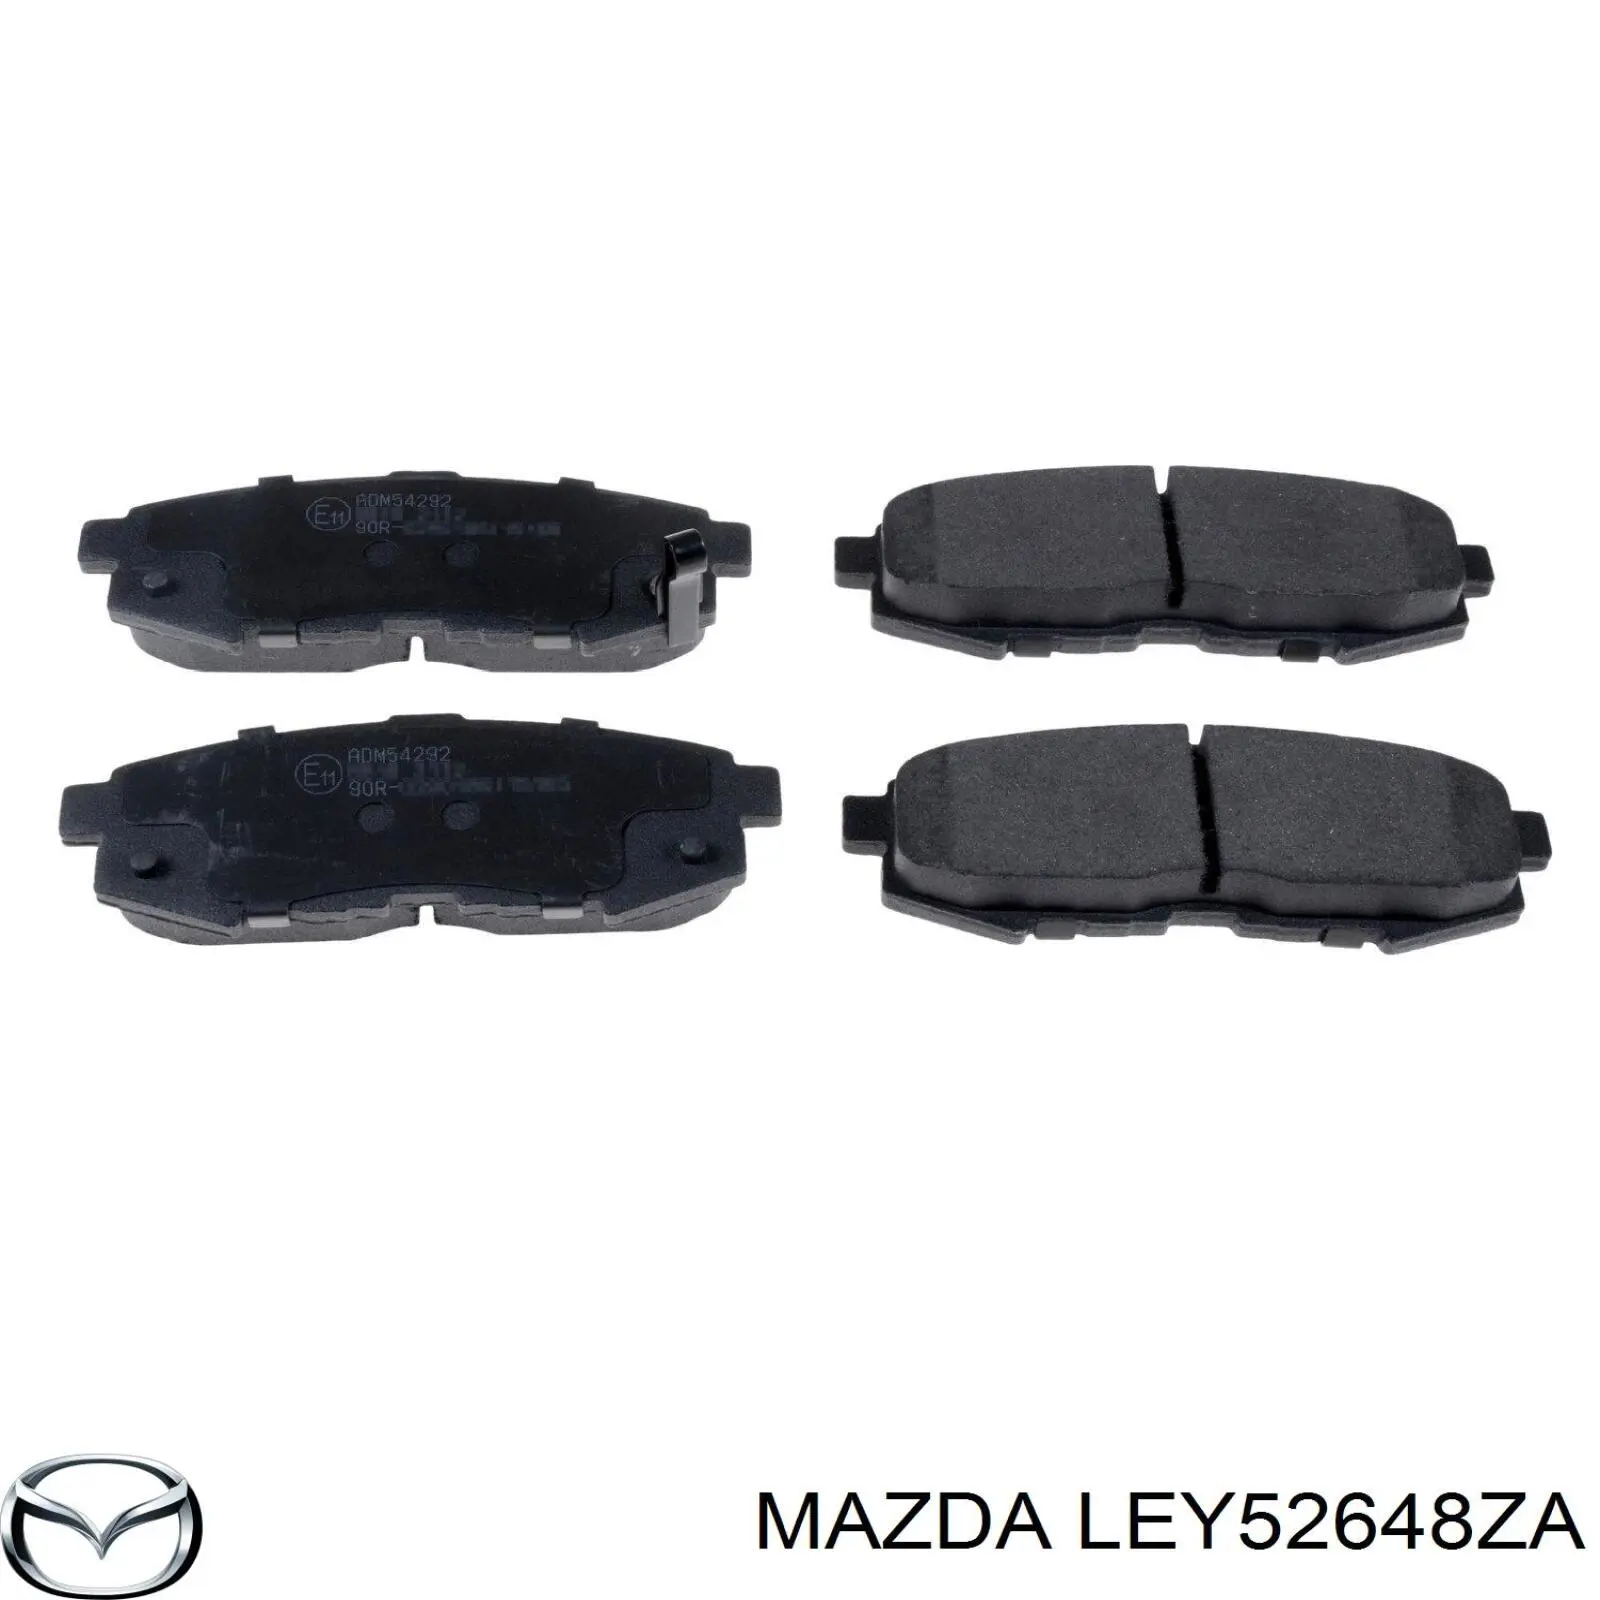 LEY52648ZA Mazda 